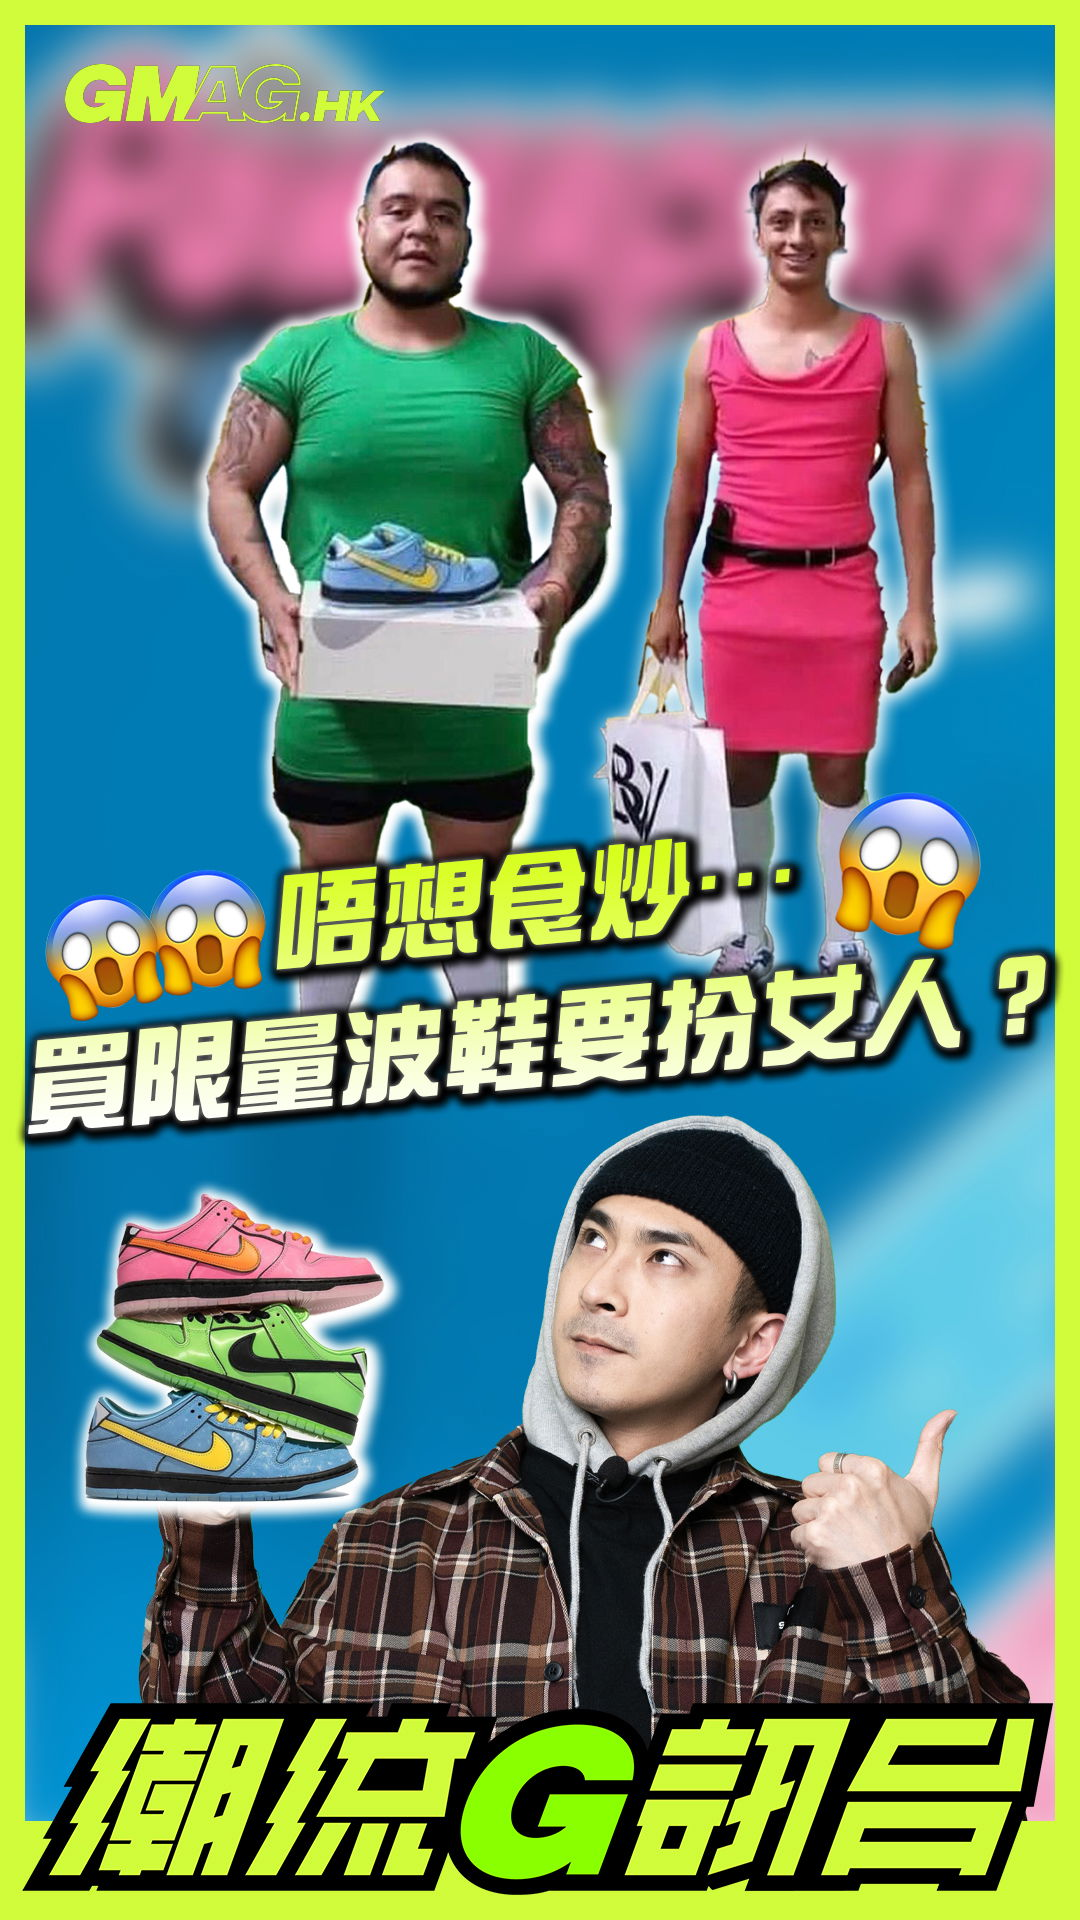 🔥《潮流G訊台》🔥 😱😱😱 為咗杜絕炒家…買限量波鞋要扮女人？